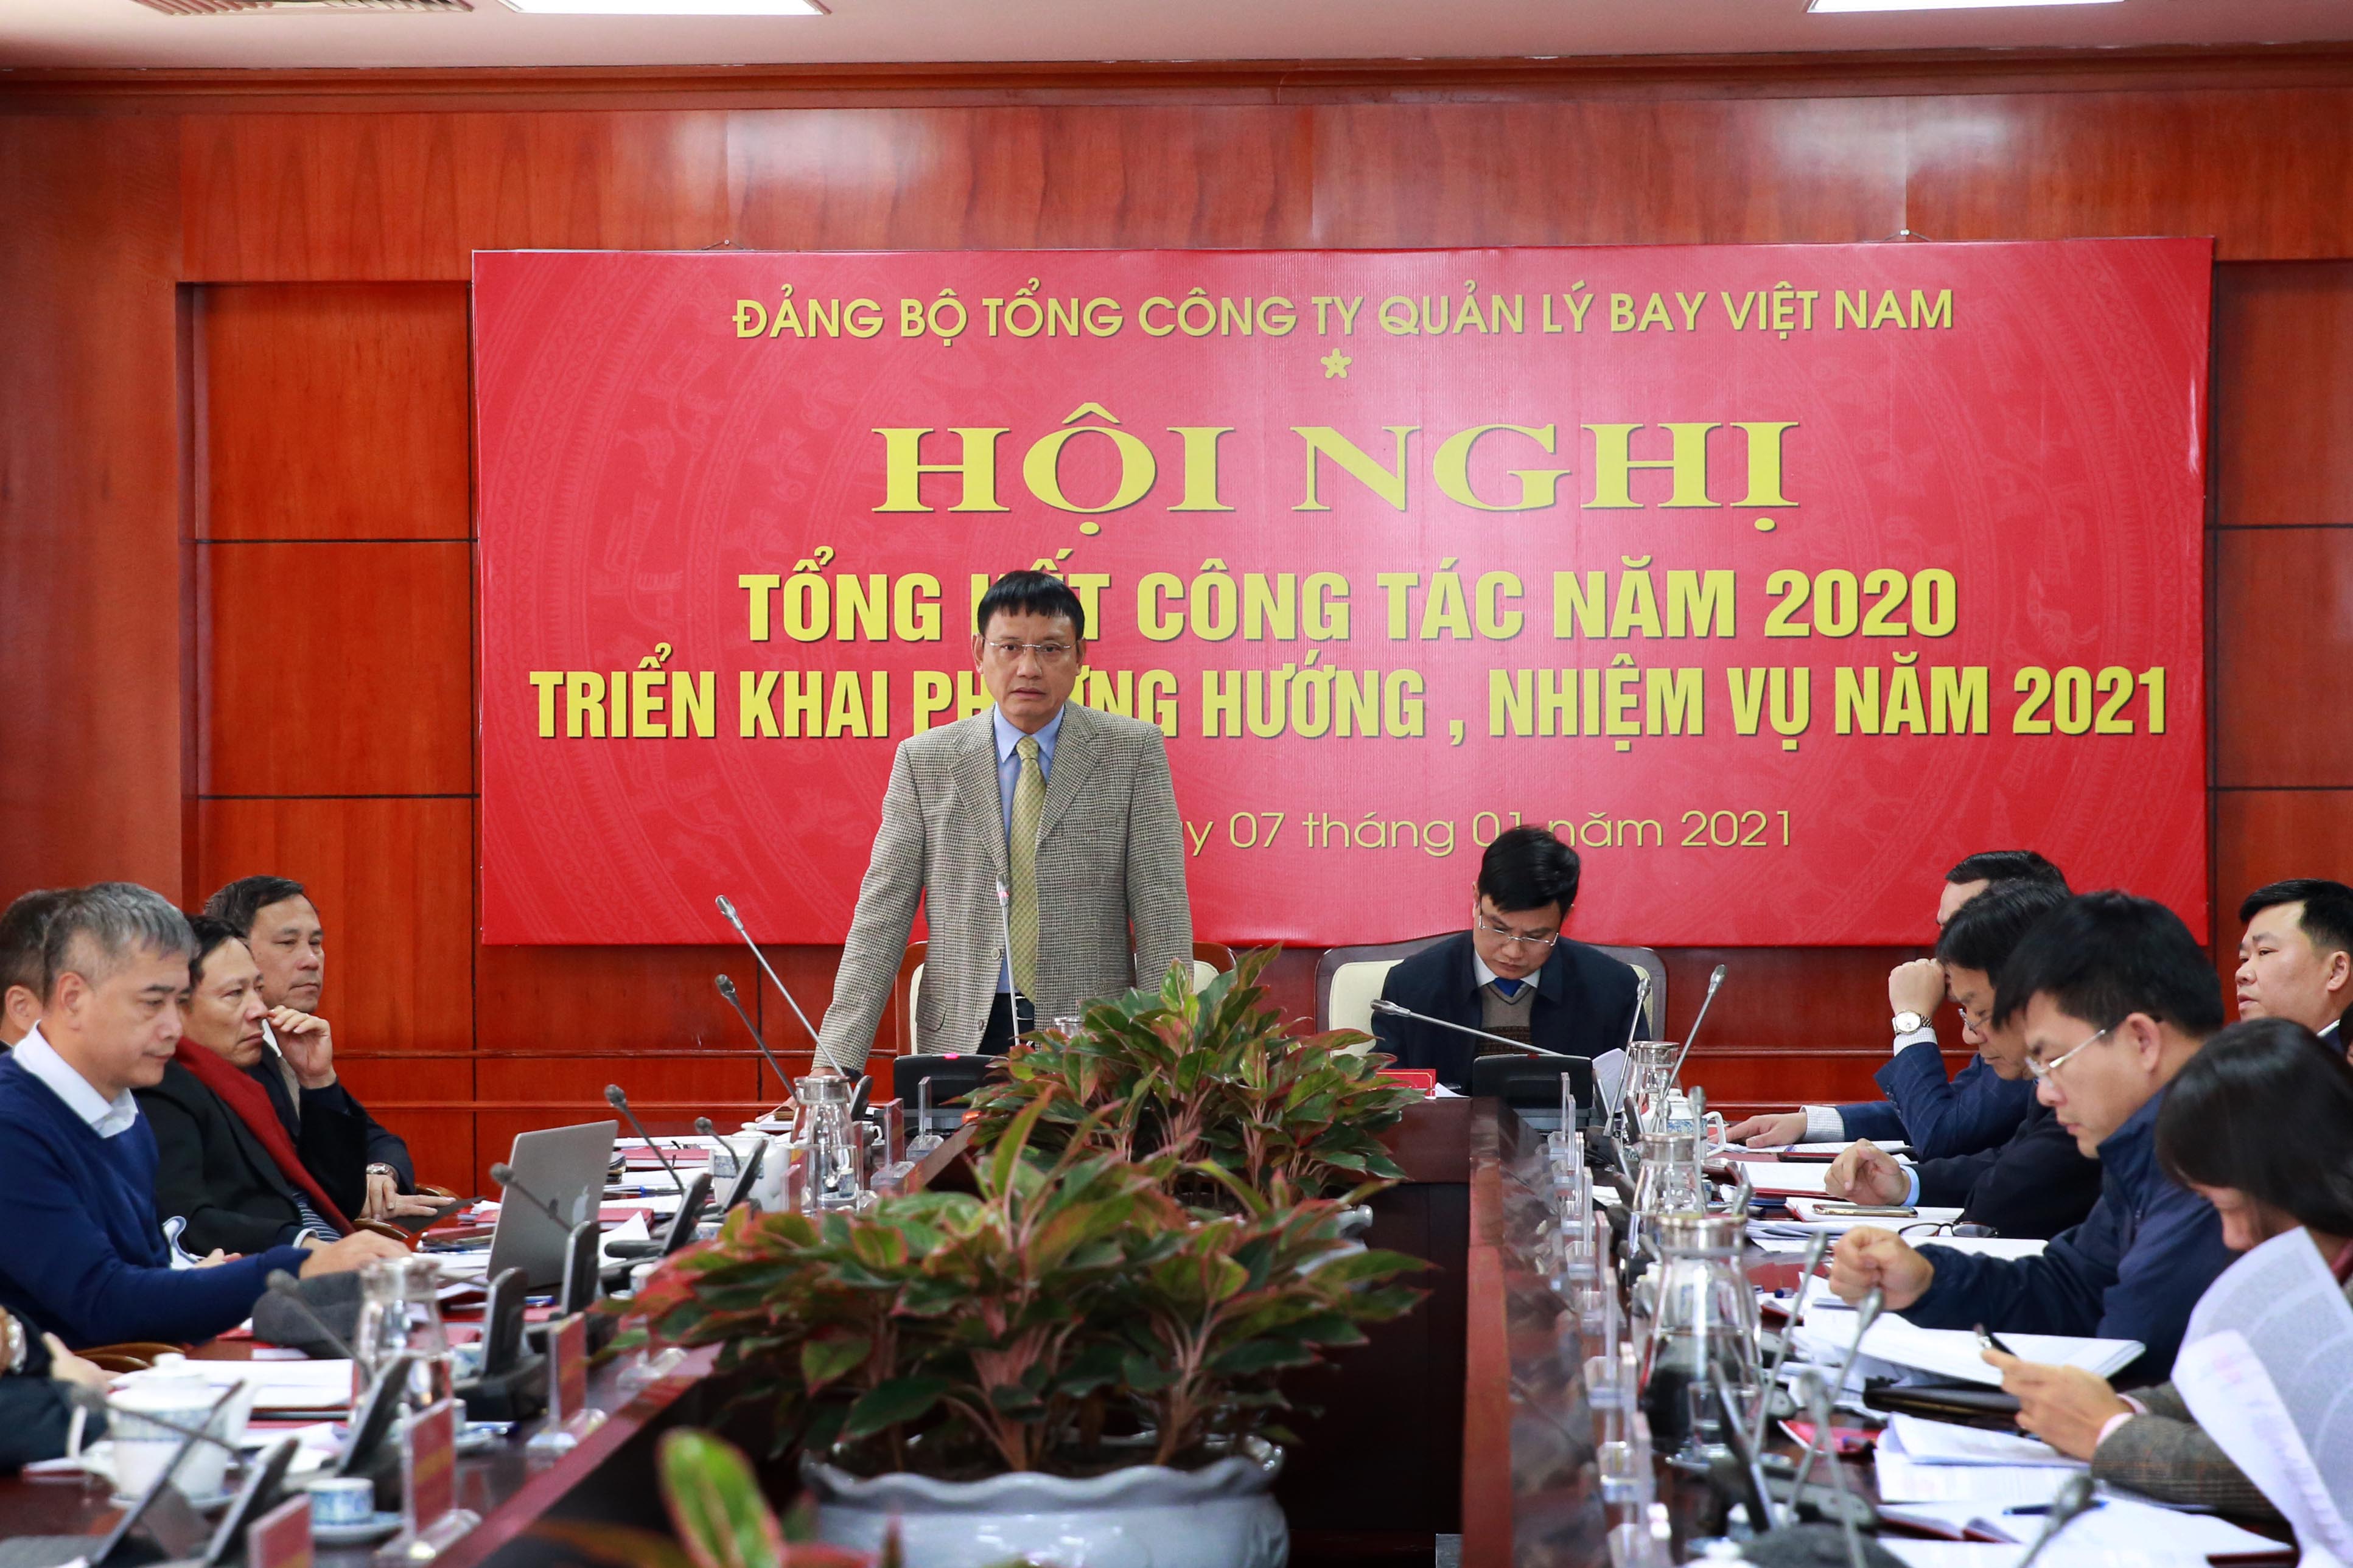 Đảng bộ VATM tổ chức Hội nghị tổng kết công tác đảng năm 2020 và, triển khai phương hướng, nhiệm vụ năm 2021